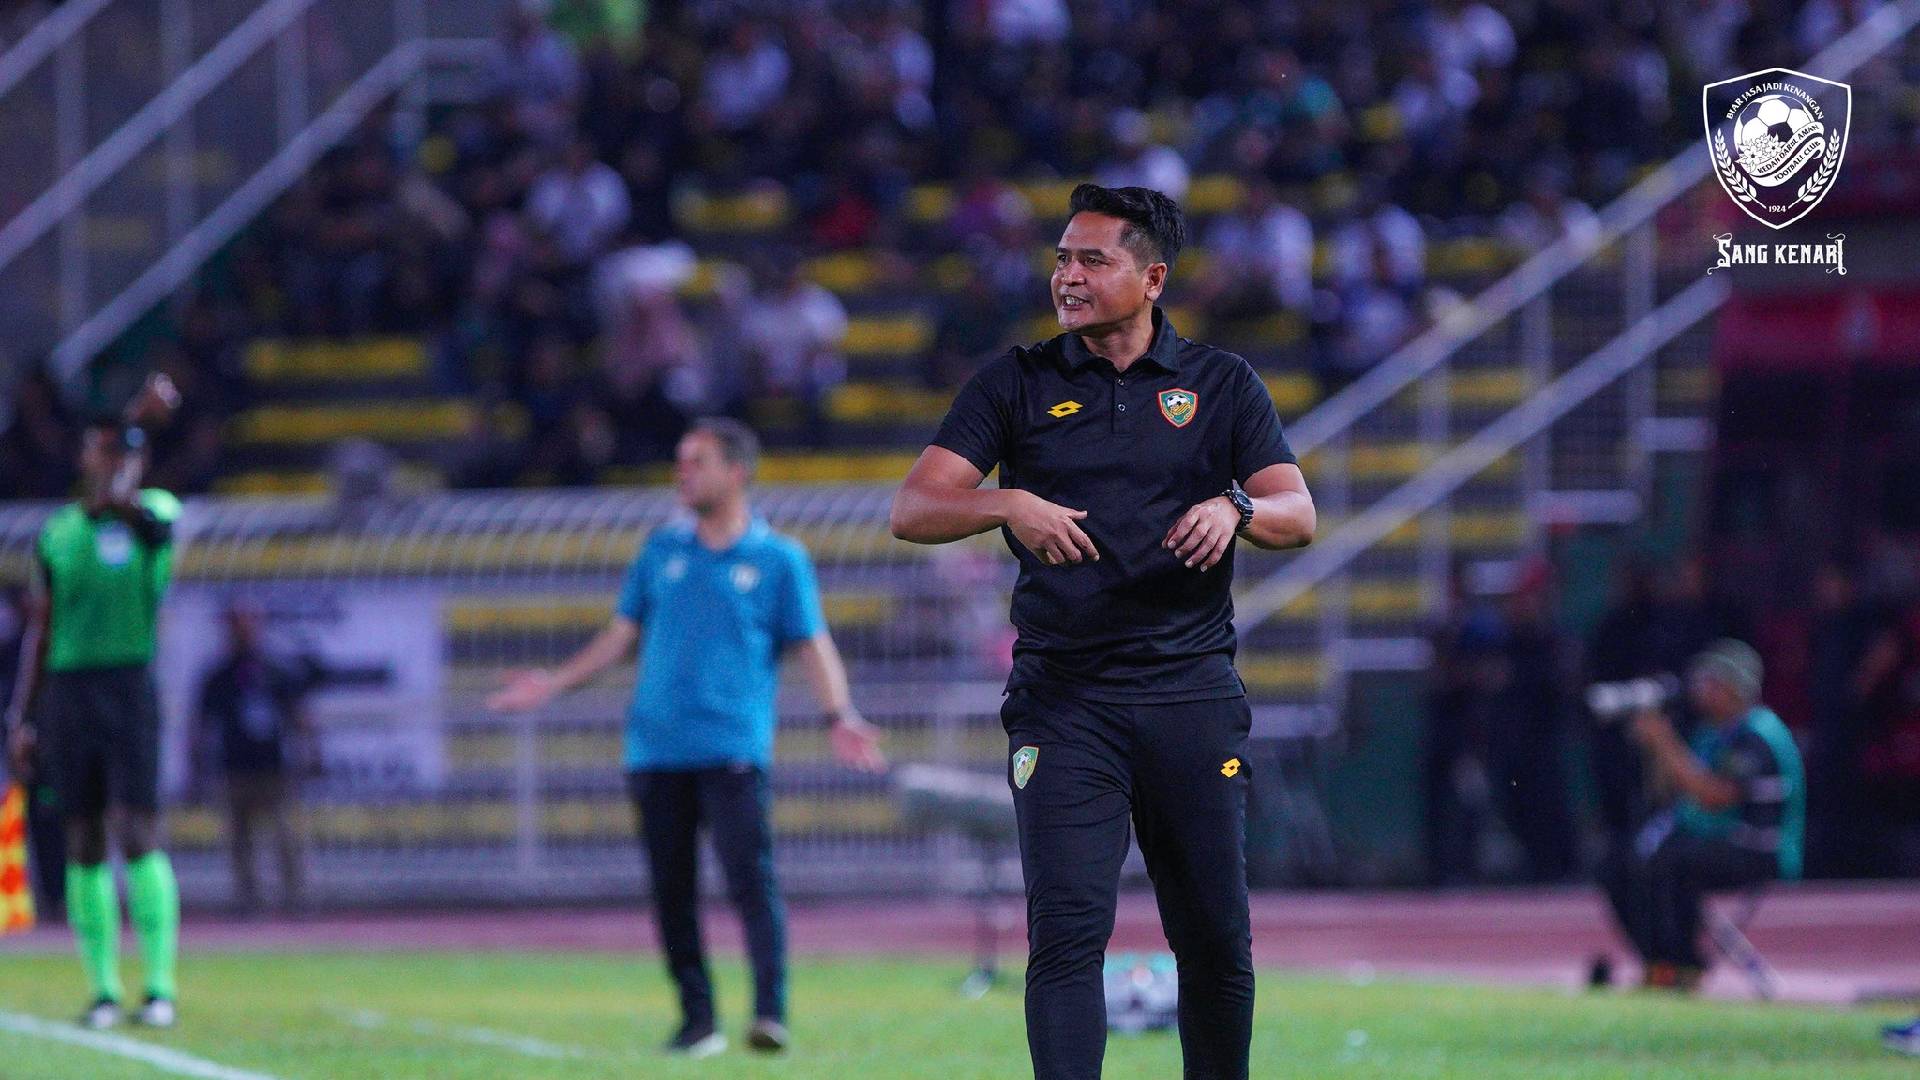 Nafuzi Zain Kedah Darul Aman FC PDRM Sedia Kejutkan Kedah